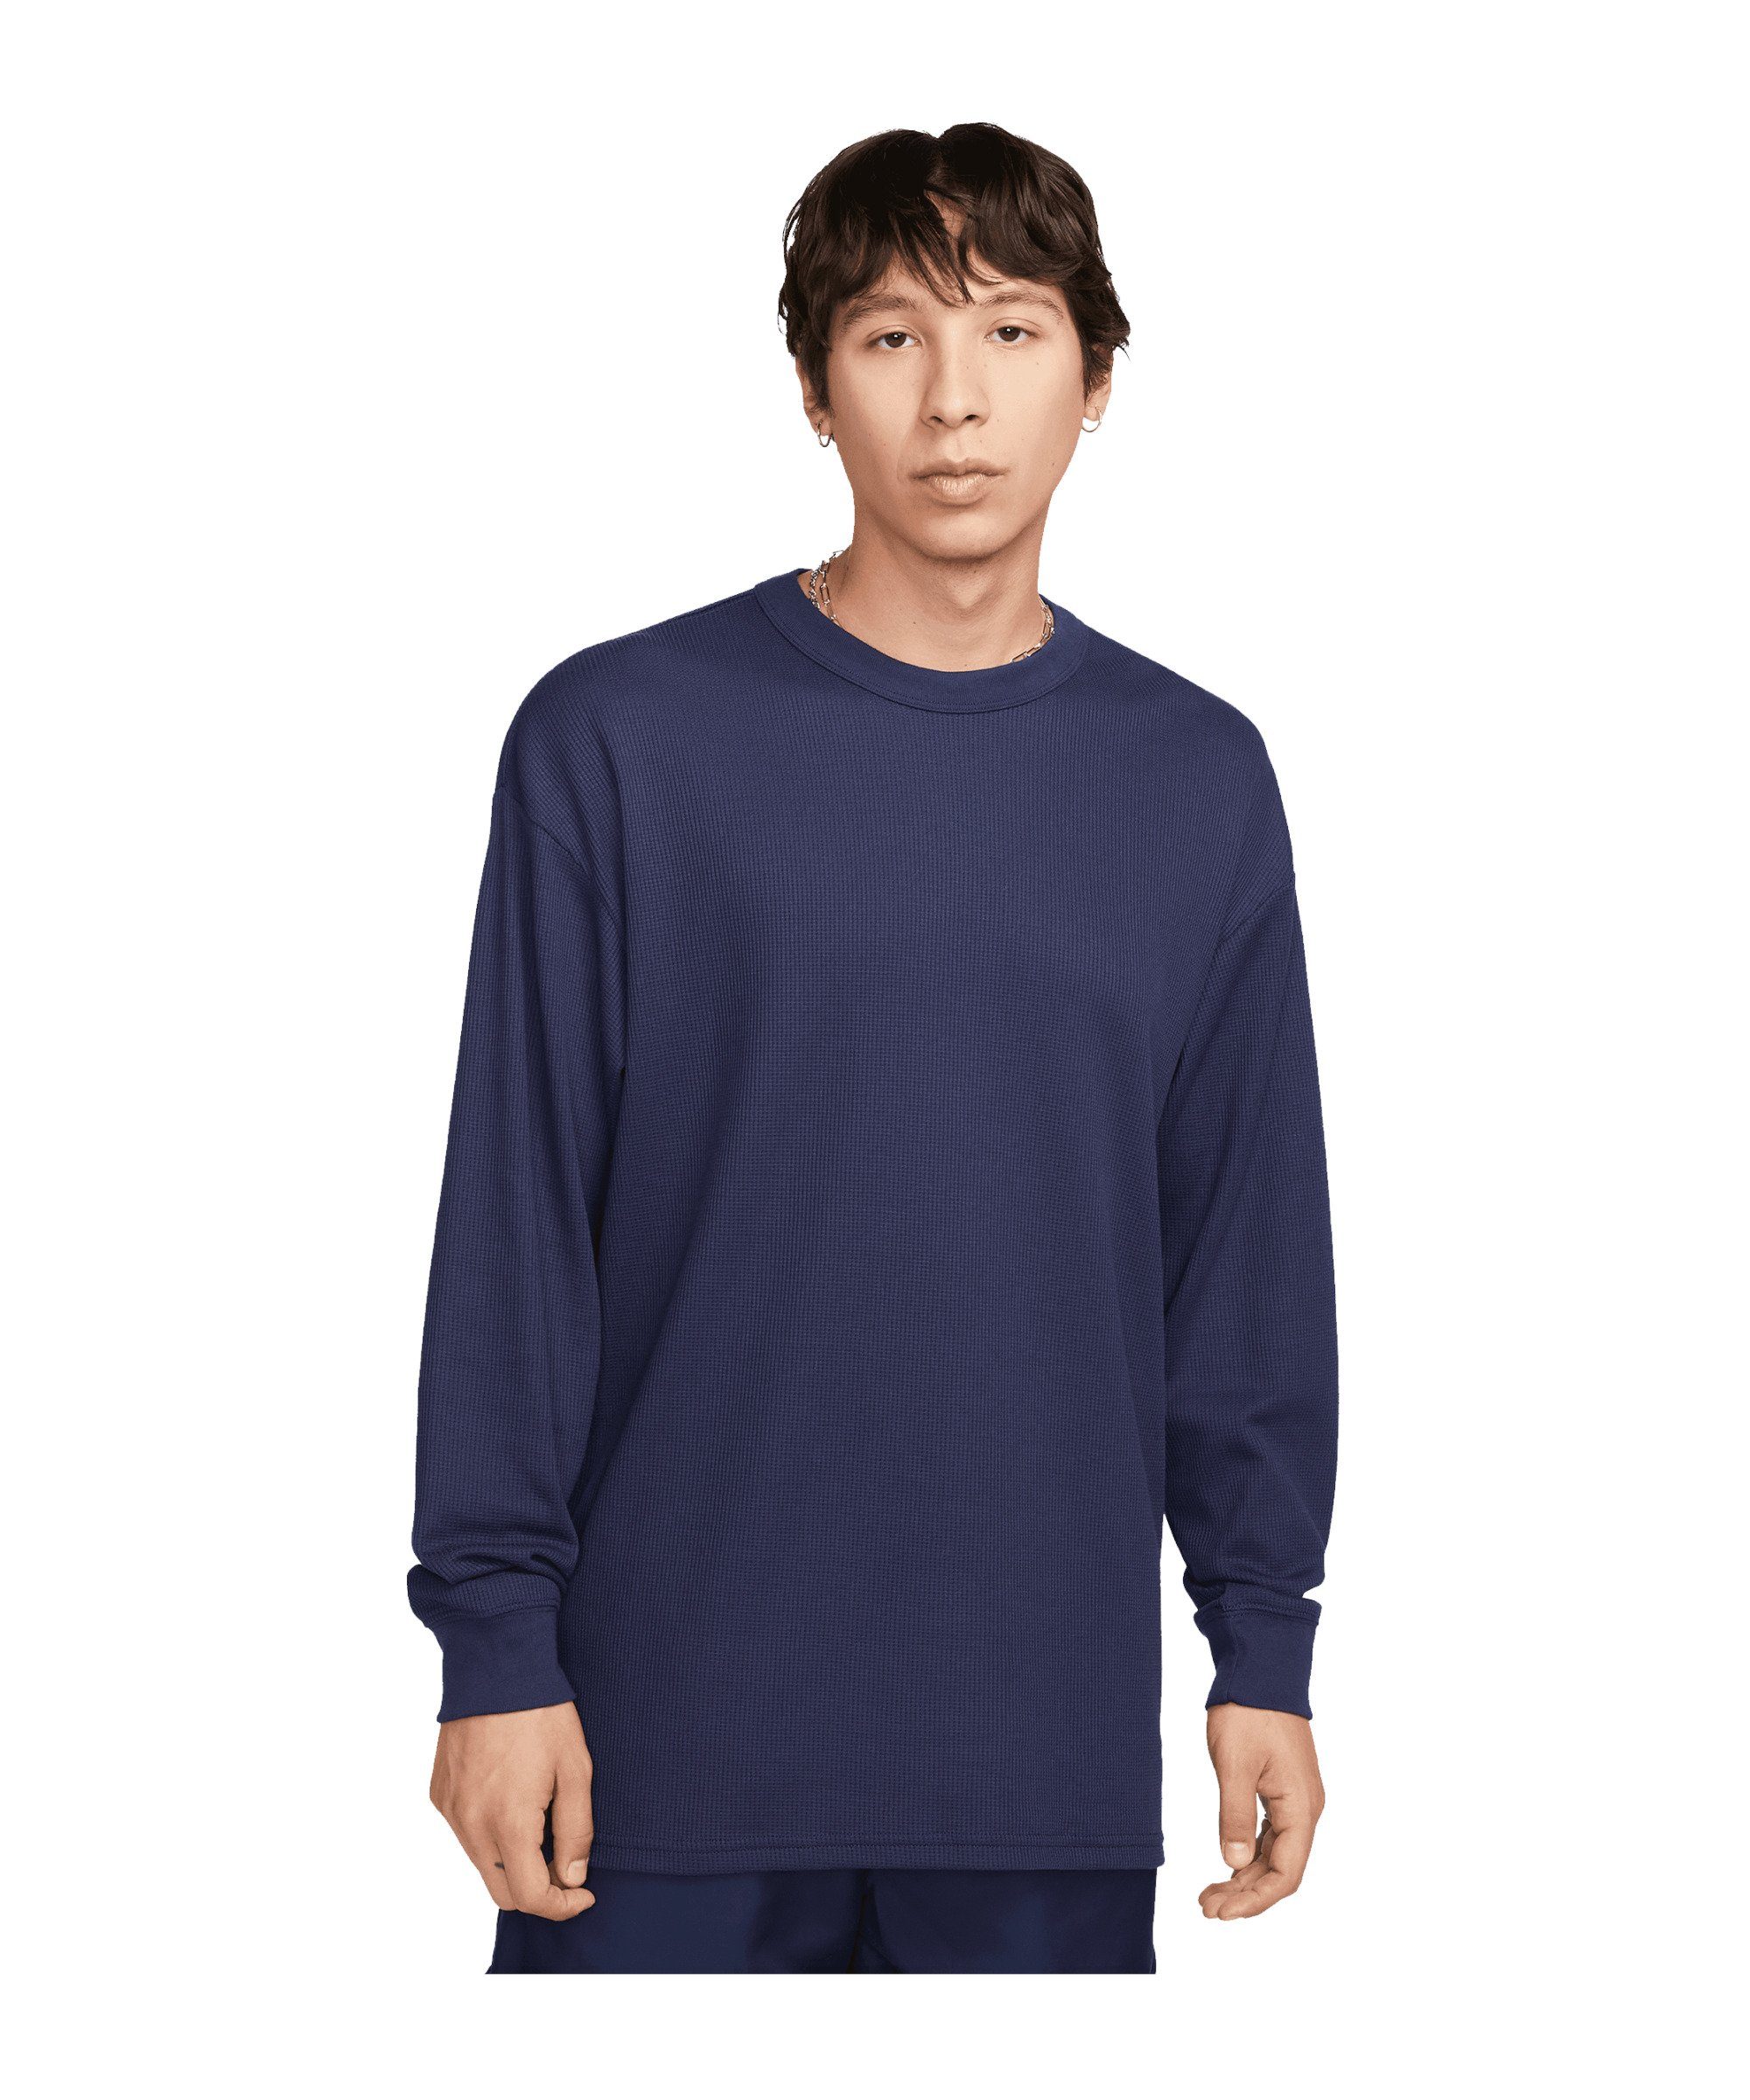 Nike Sportswear T-Shirt Utility Sweatshirt default